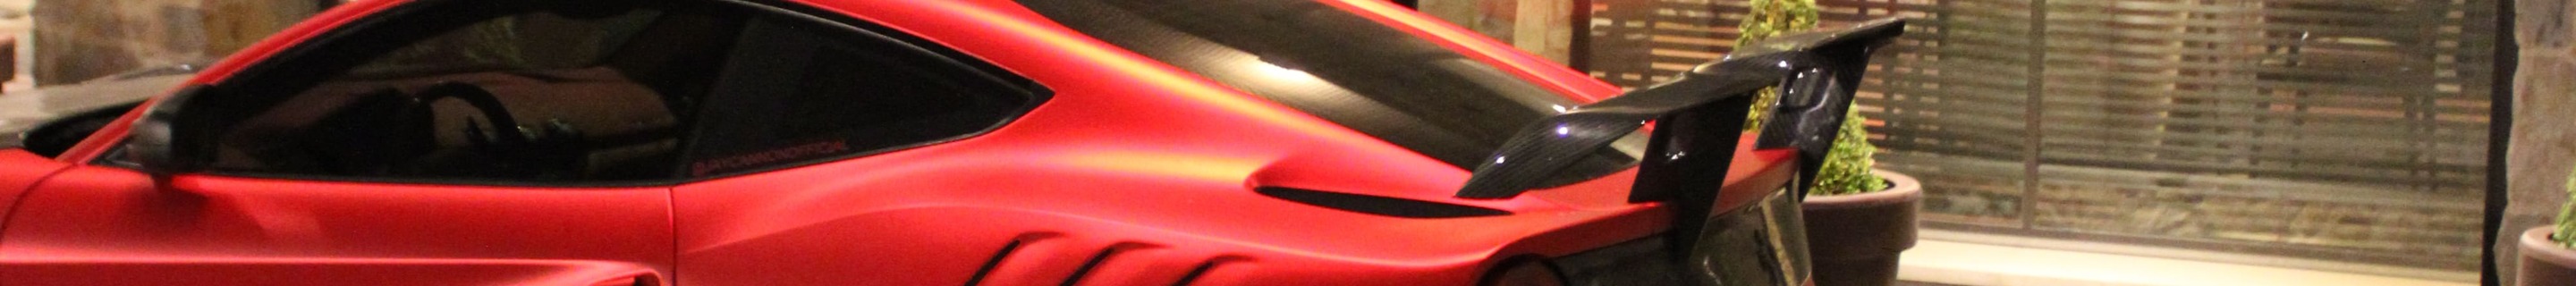 Ferrari F12berlinetta Duke Dynamics